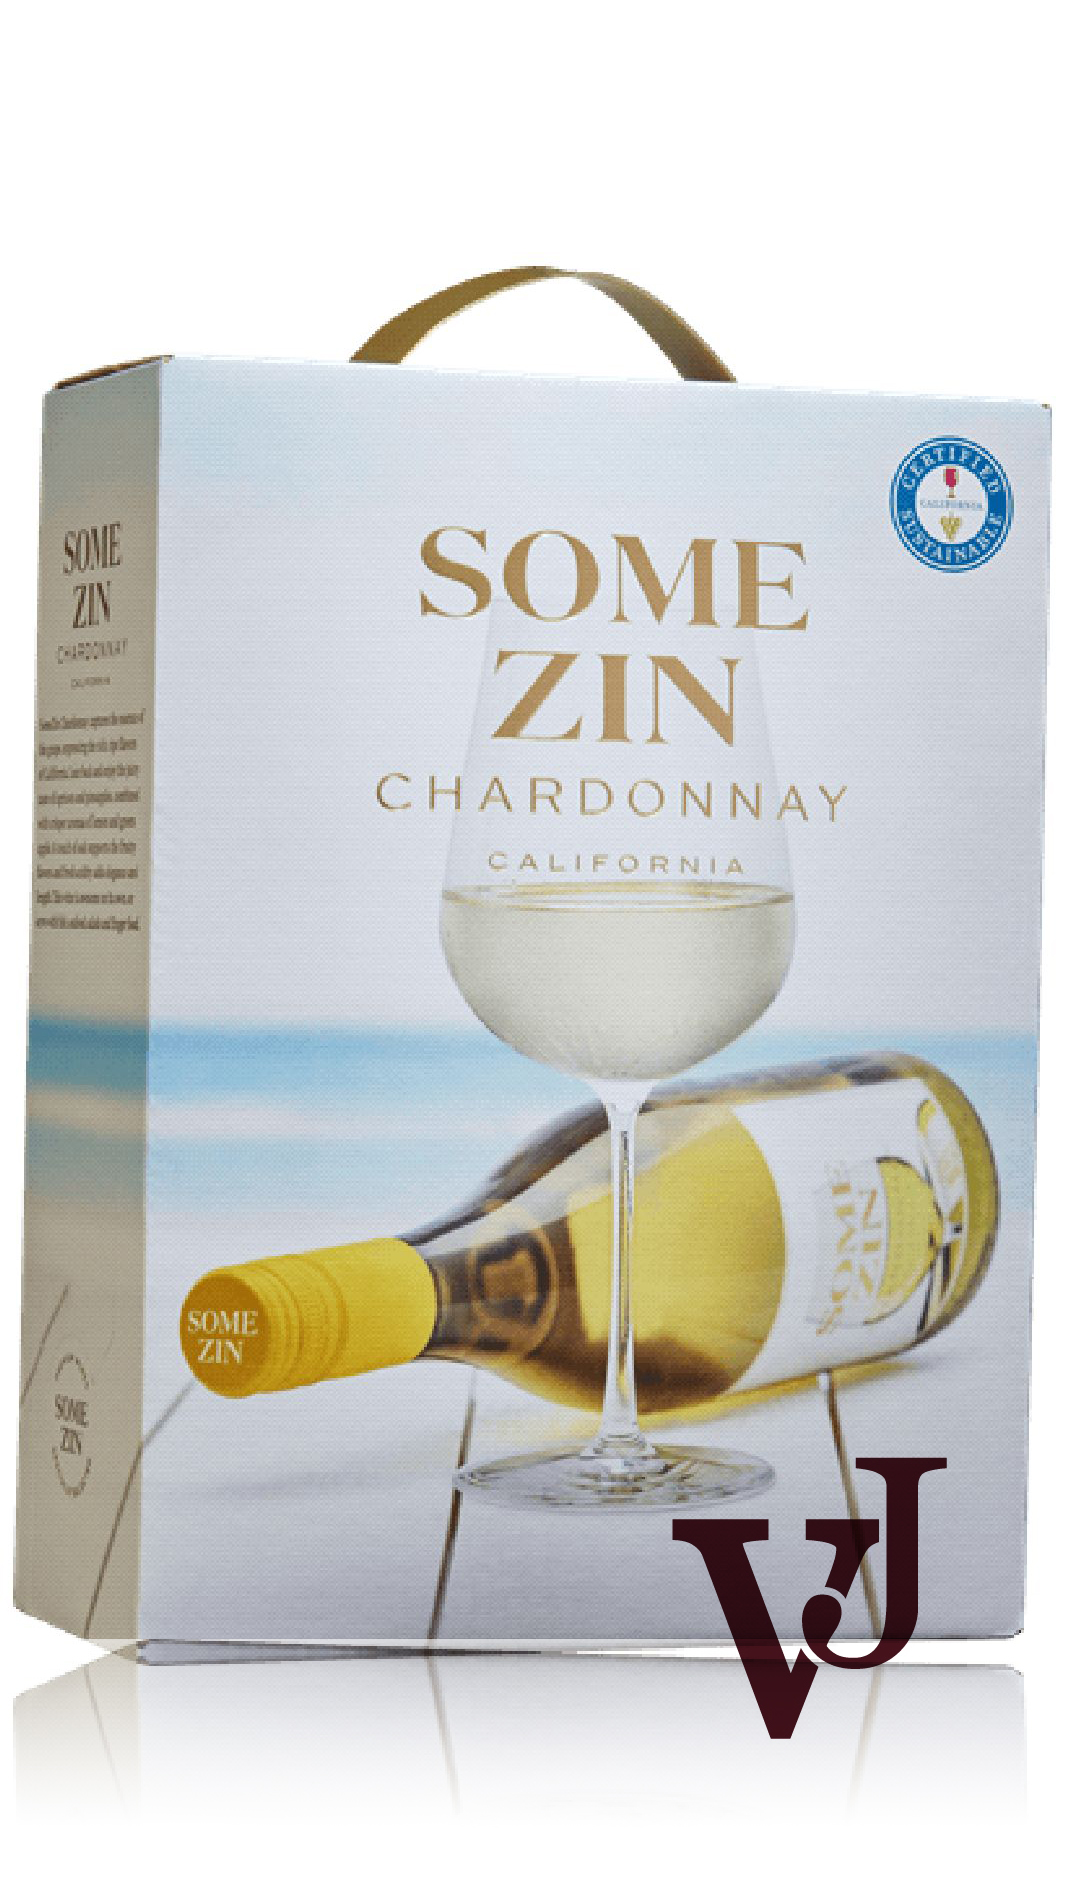 Vitt Vin - SomeZin Chardonnay artikel nummer 635508 från producenten PrimeWine Sweden AB från området Kalifornien beläget i USA.